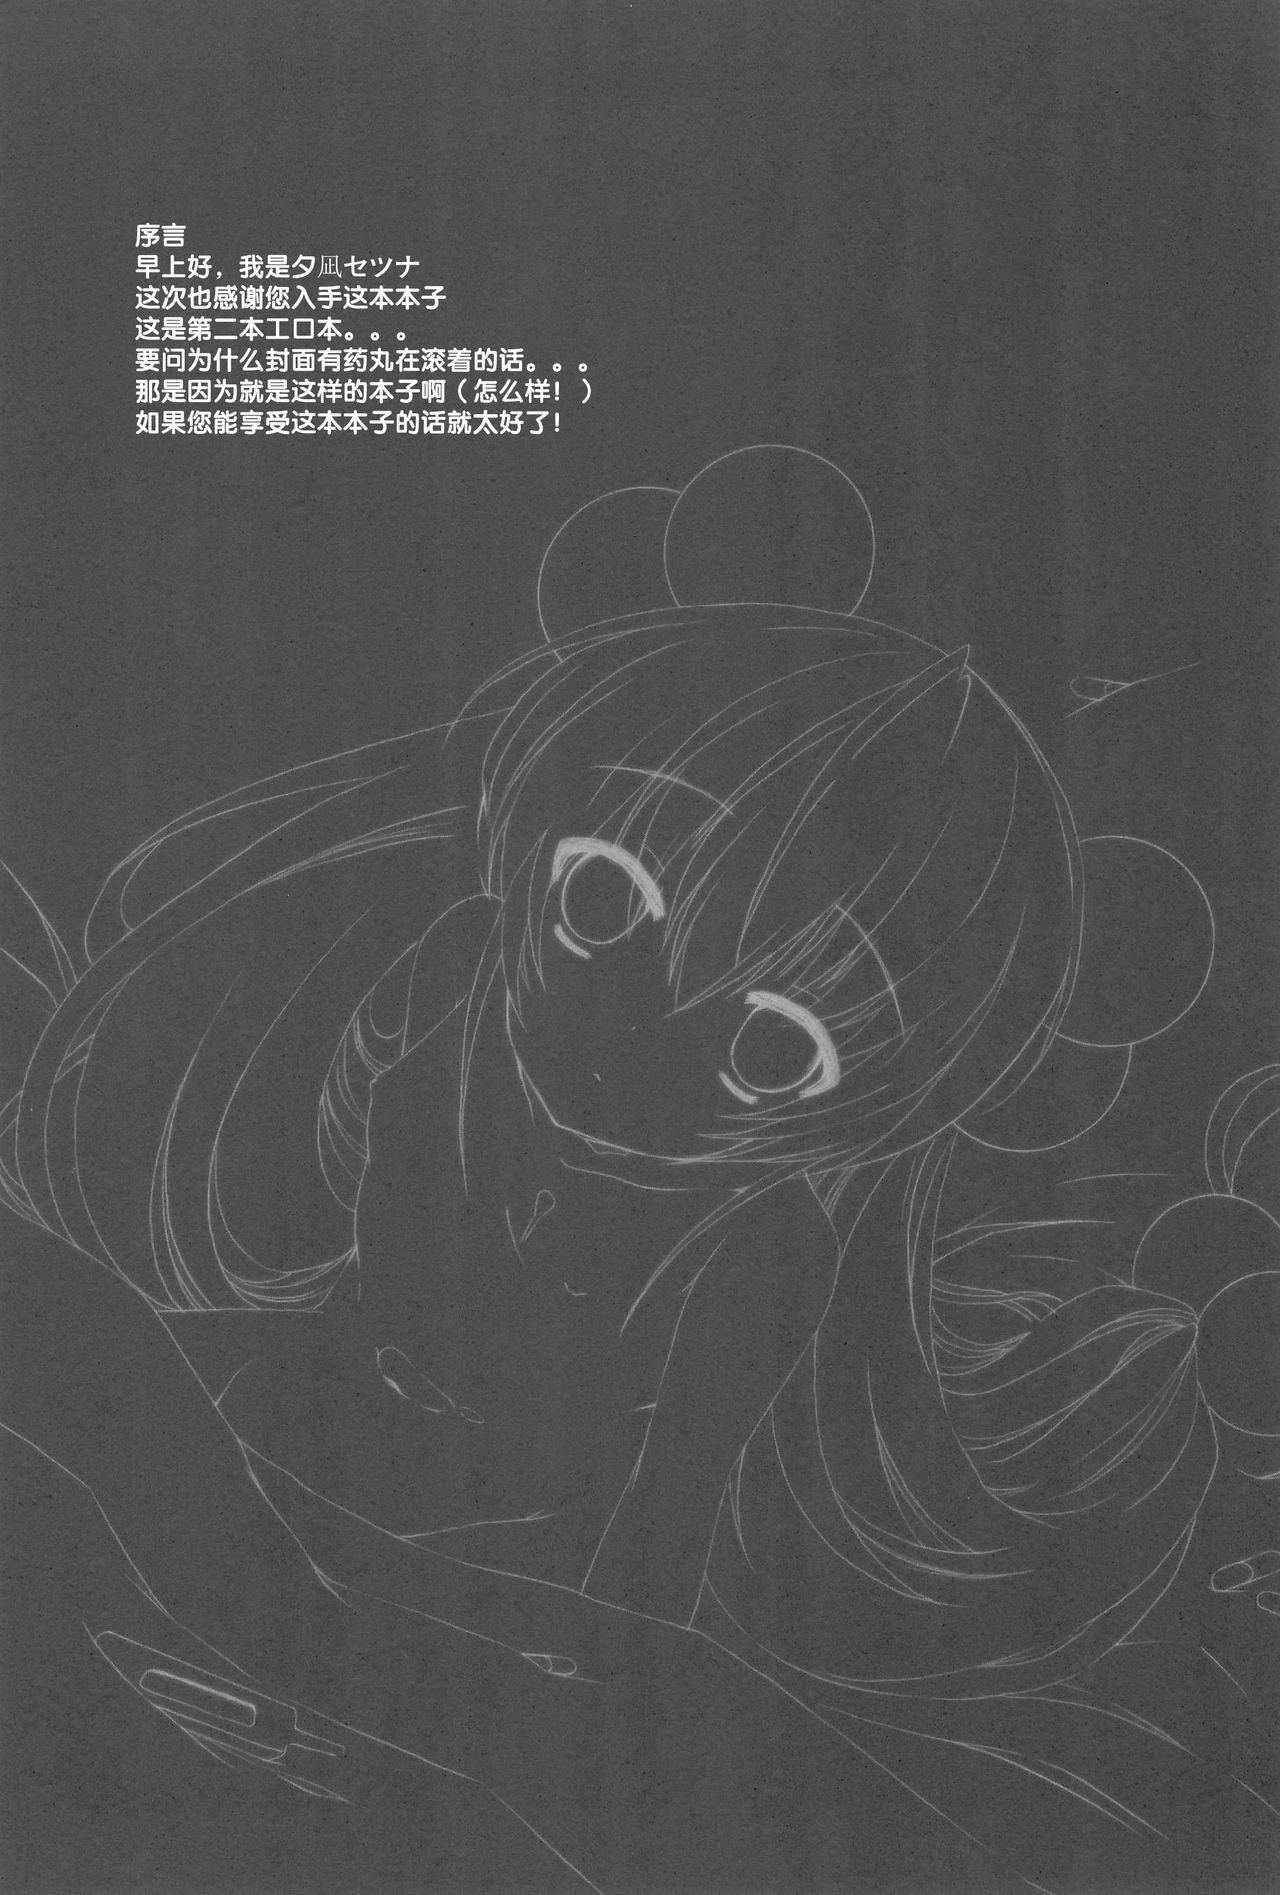 Chichona Onetsu no Jikan - Kodomo no jikan Passion - Page 5